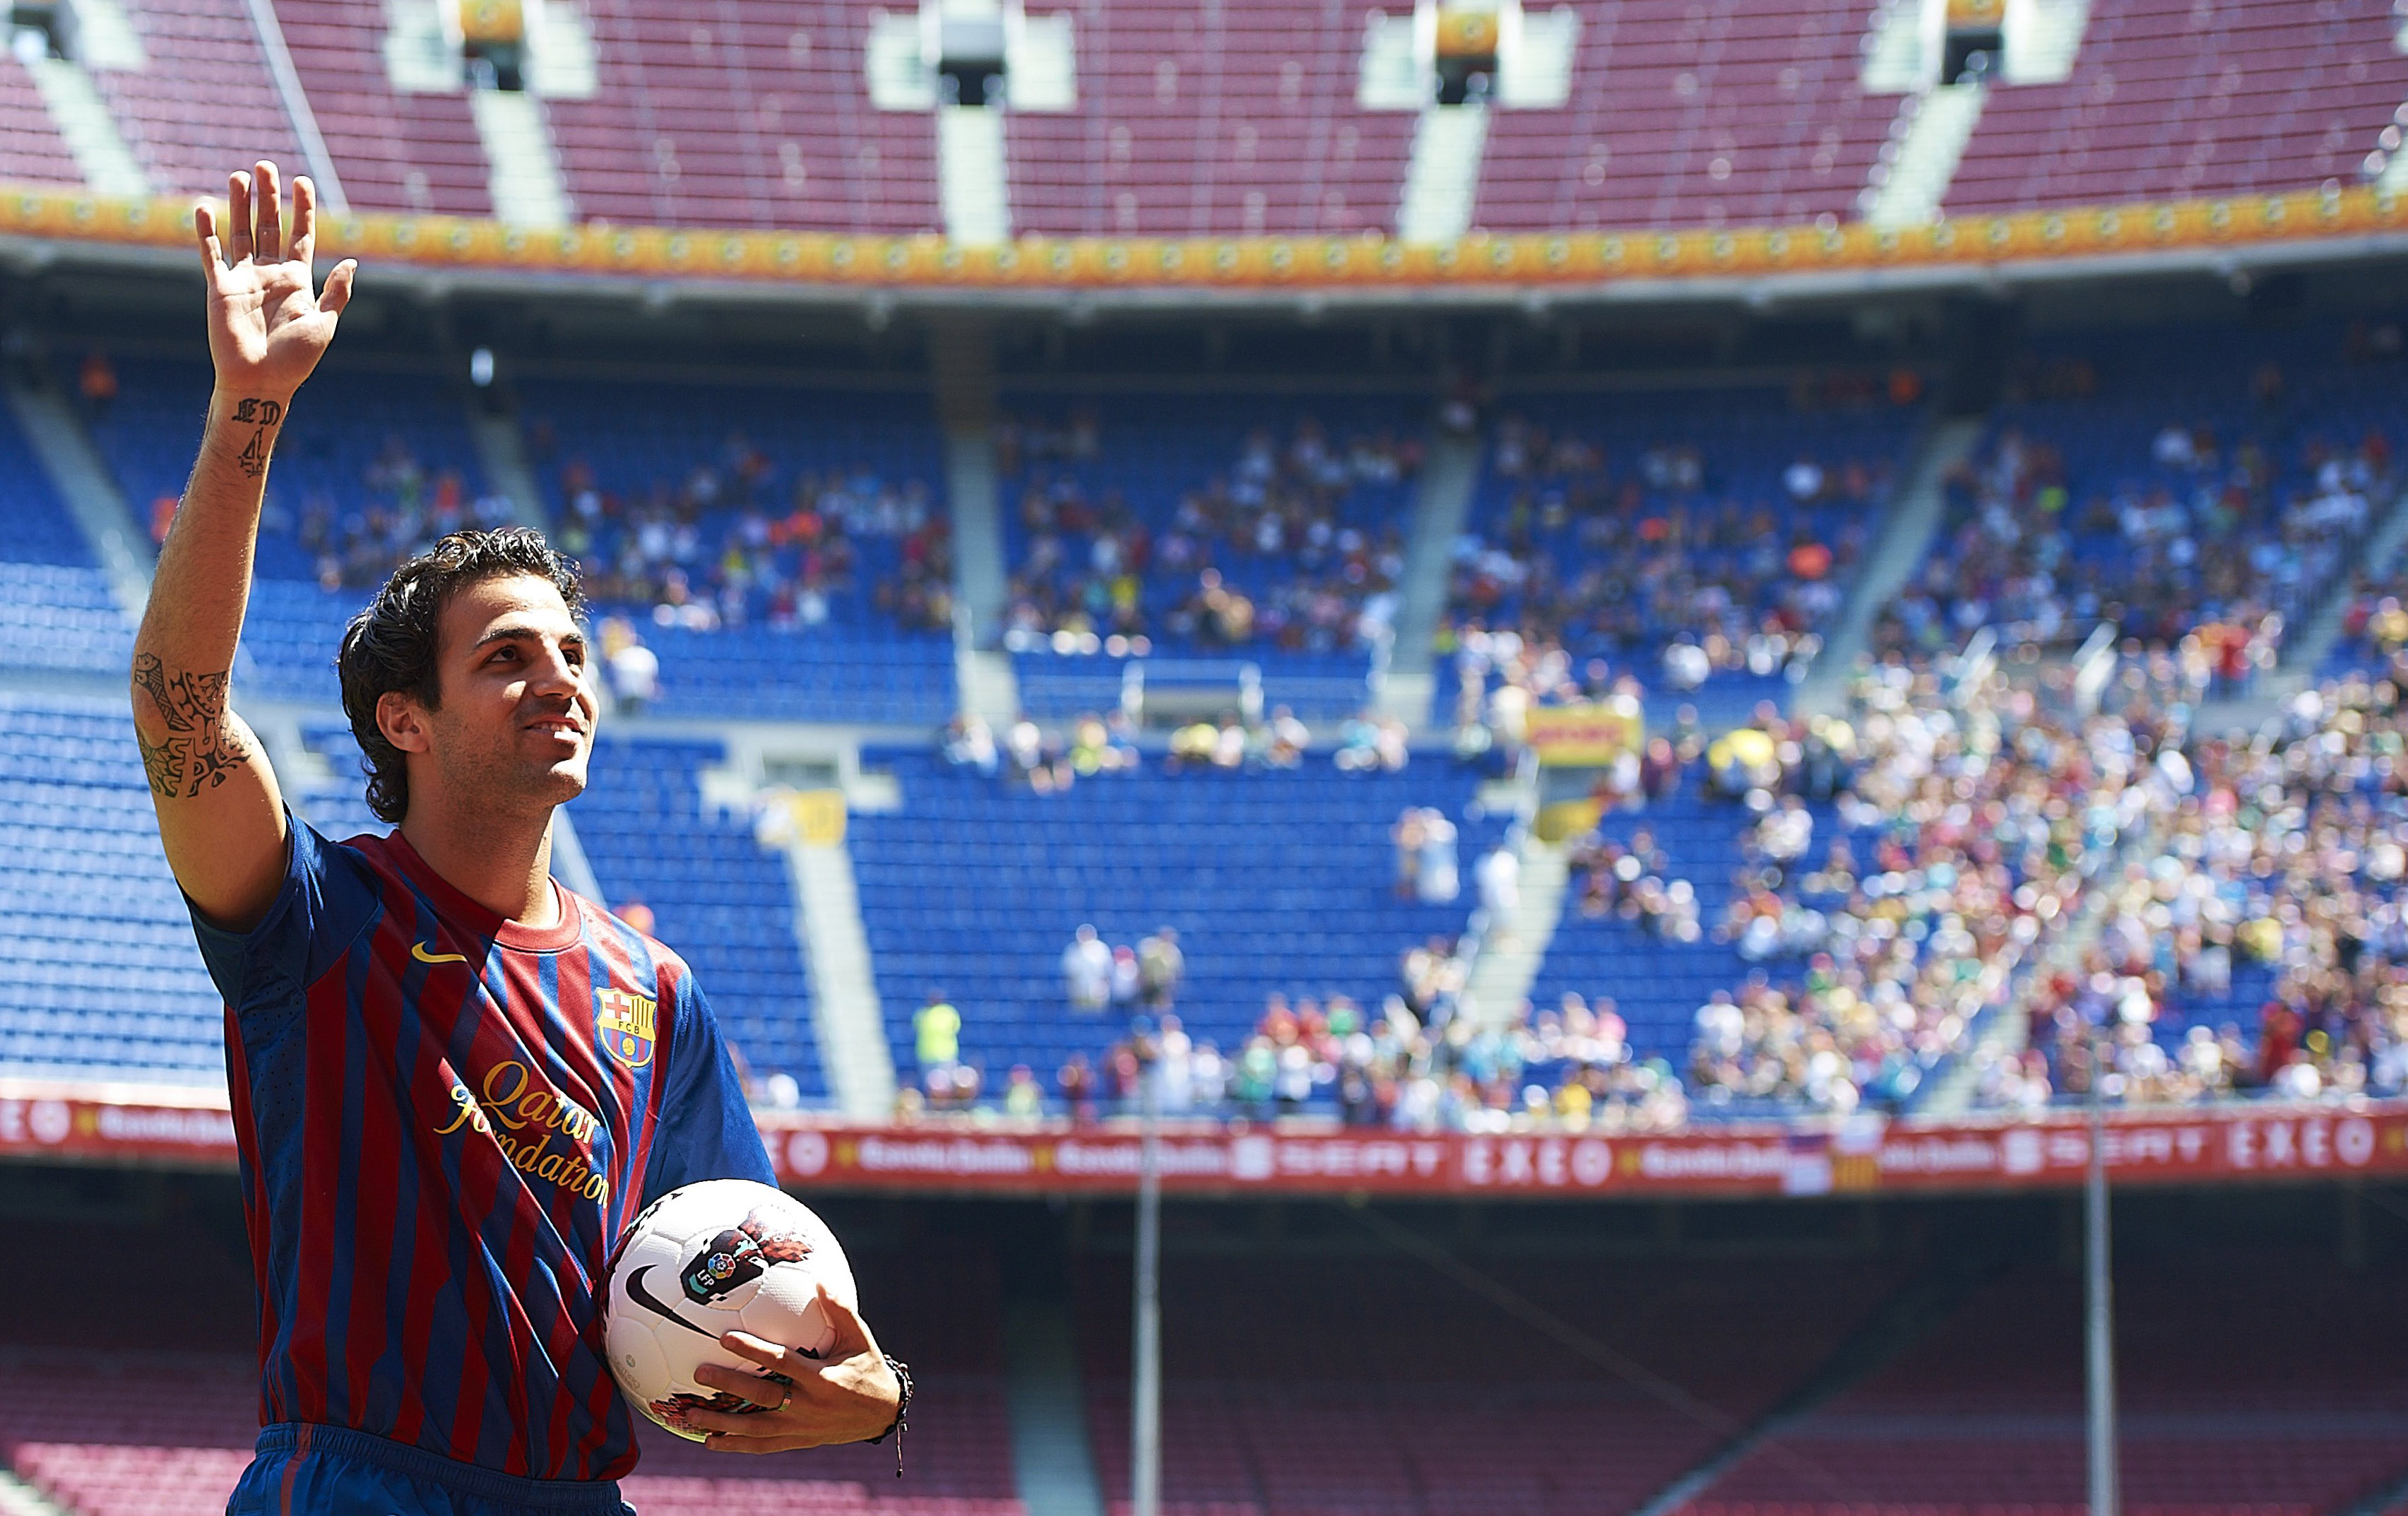 Efter flera år av rykten, viskningar, ordkrig och förkastade bud är Cesc Fabregas nu klar för Barcelona. På måndagen presenterades han på Camp Nou inför tusentals fans, som hade kommit för att se "den förlorade" sonen återvända hem.